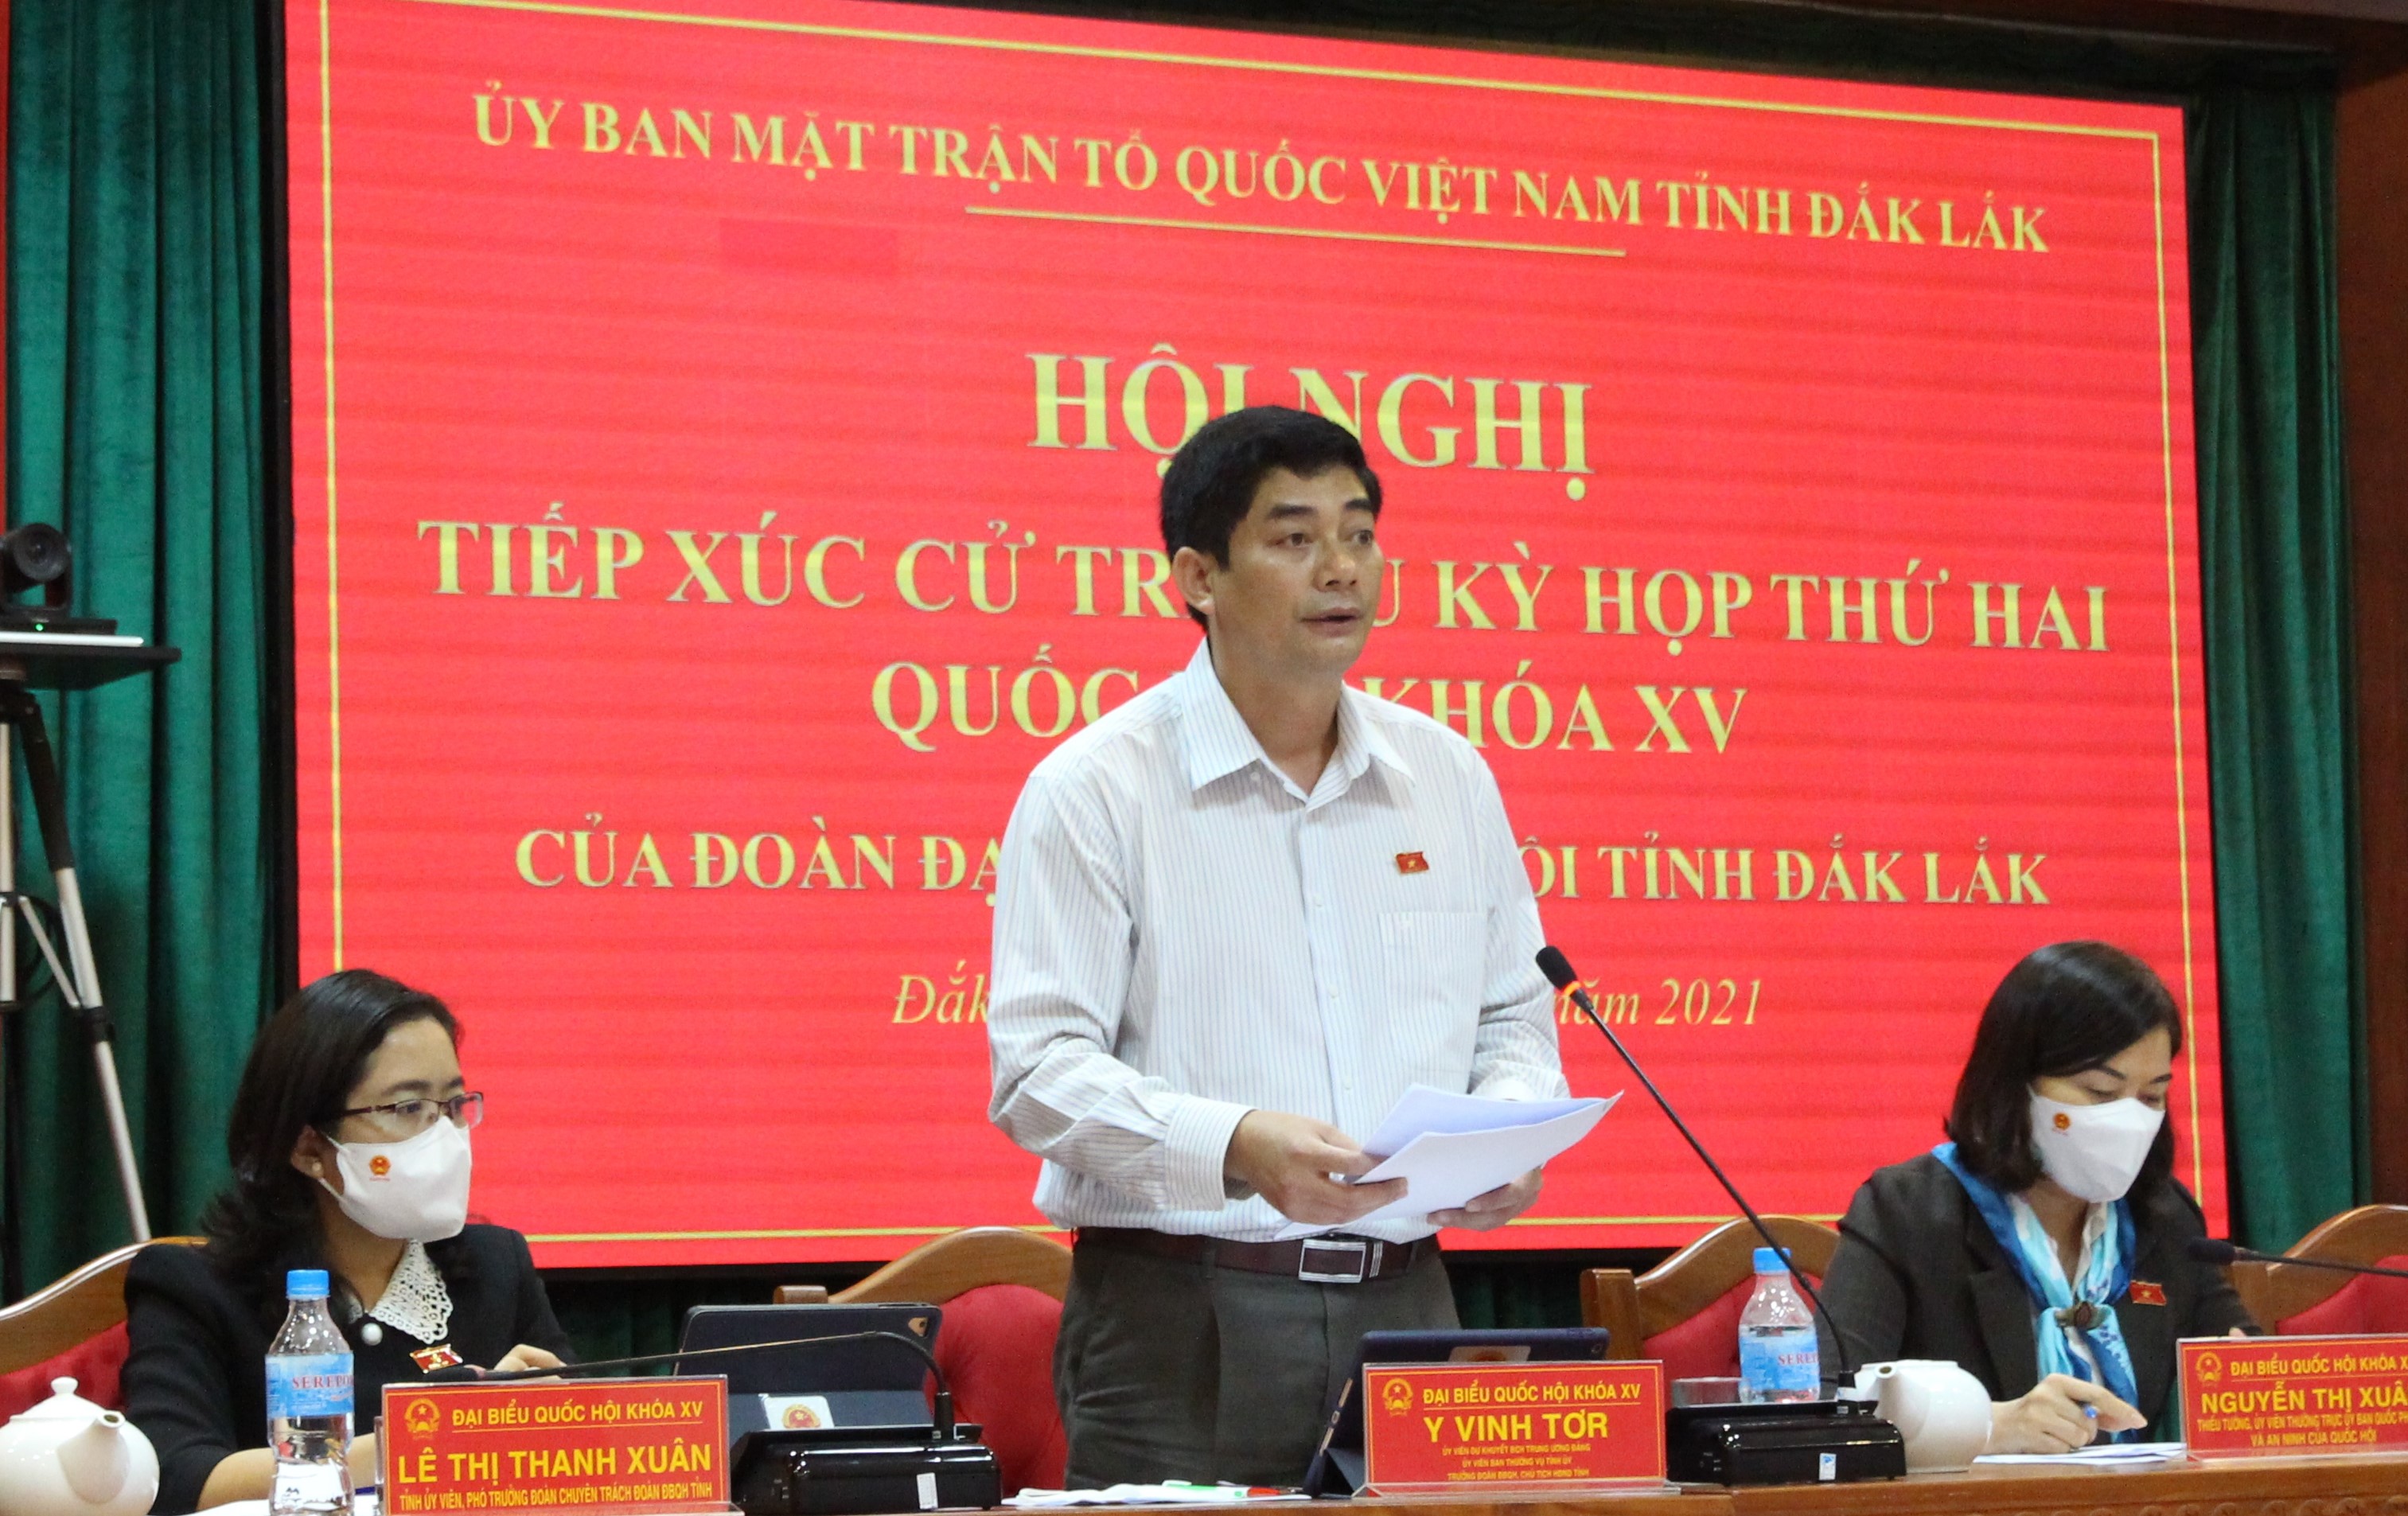 Đoàn Đại biểu Quốc hội tỉnh Đắk Lắk tiếp xúc cử tri sau Kỳ họp thứ 2, Quốc hội khóa XV